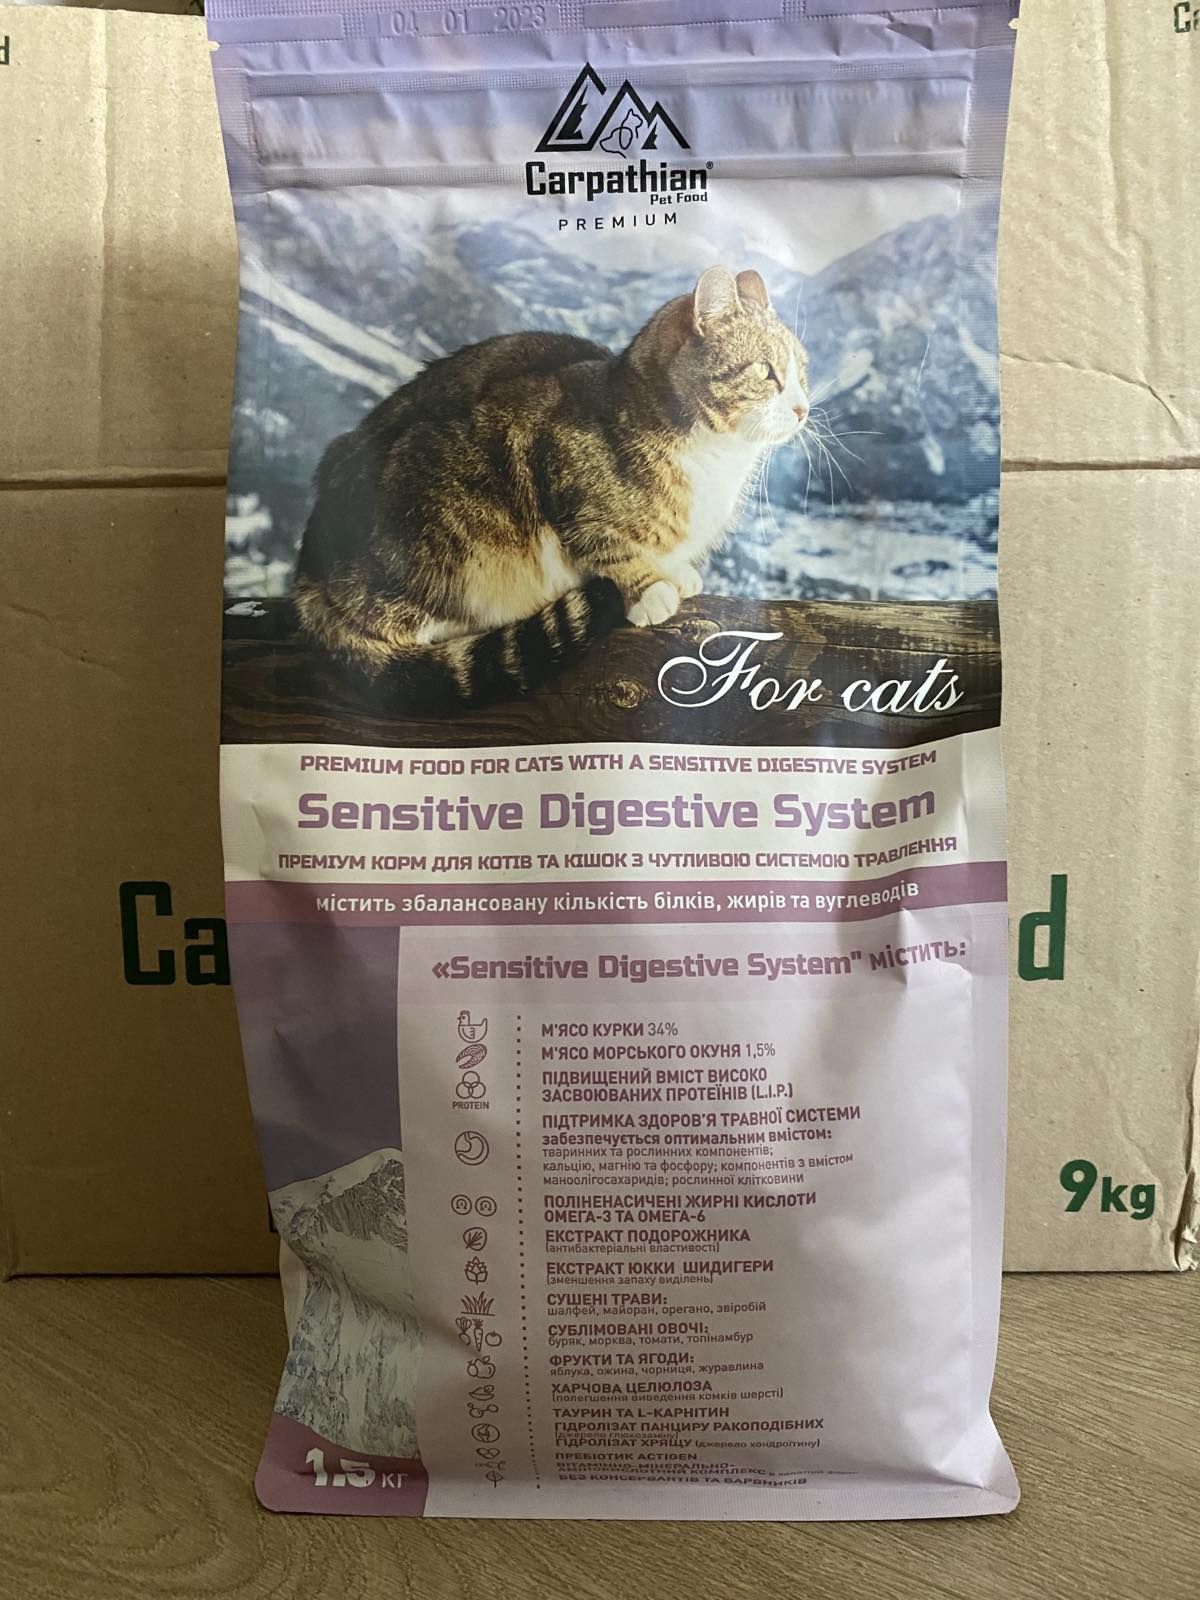 Сухий корм для котів Optimal care Carpathian Pet Food, 1,5 кг